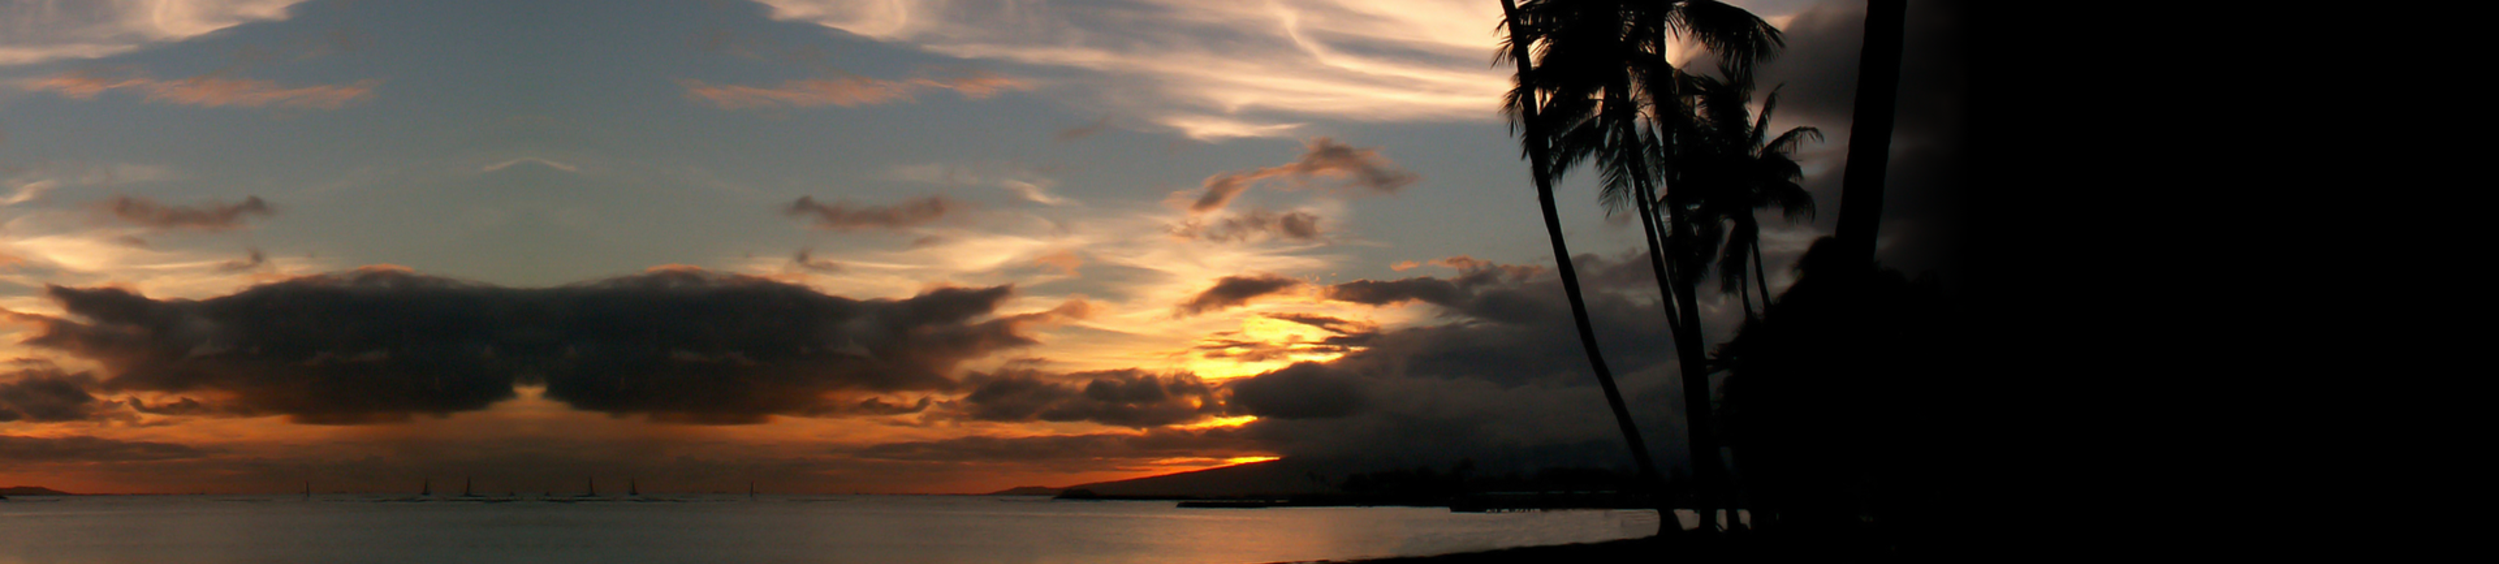 alt="beautiful sunset over florida water"